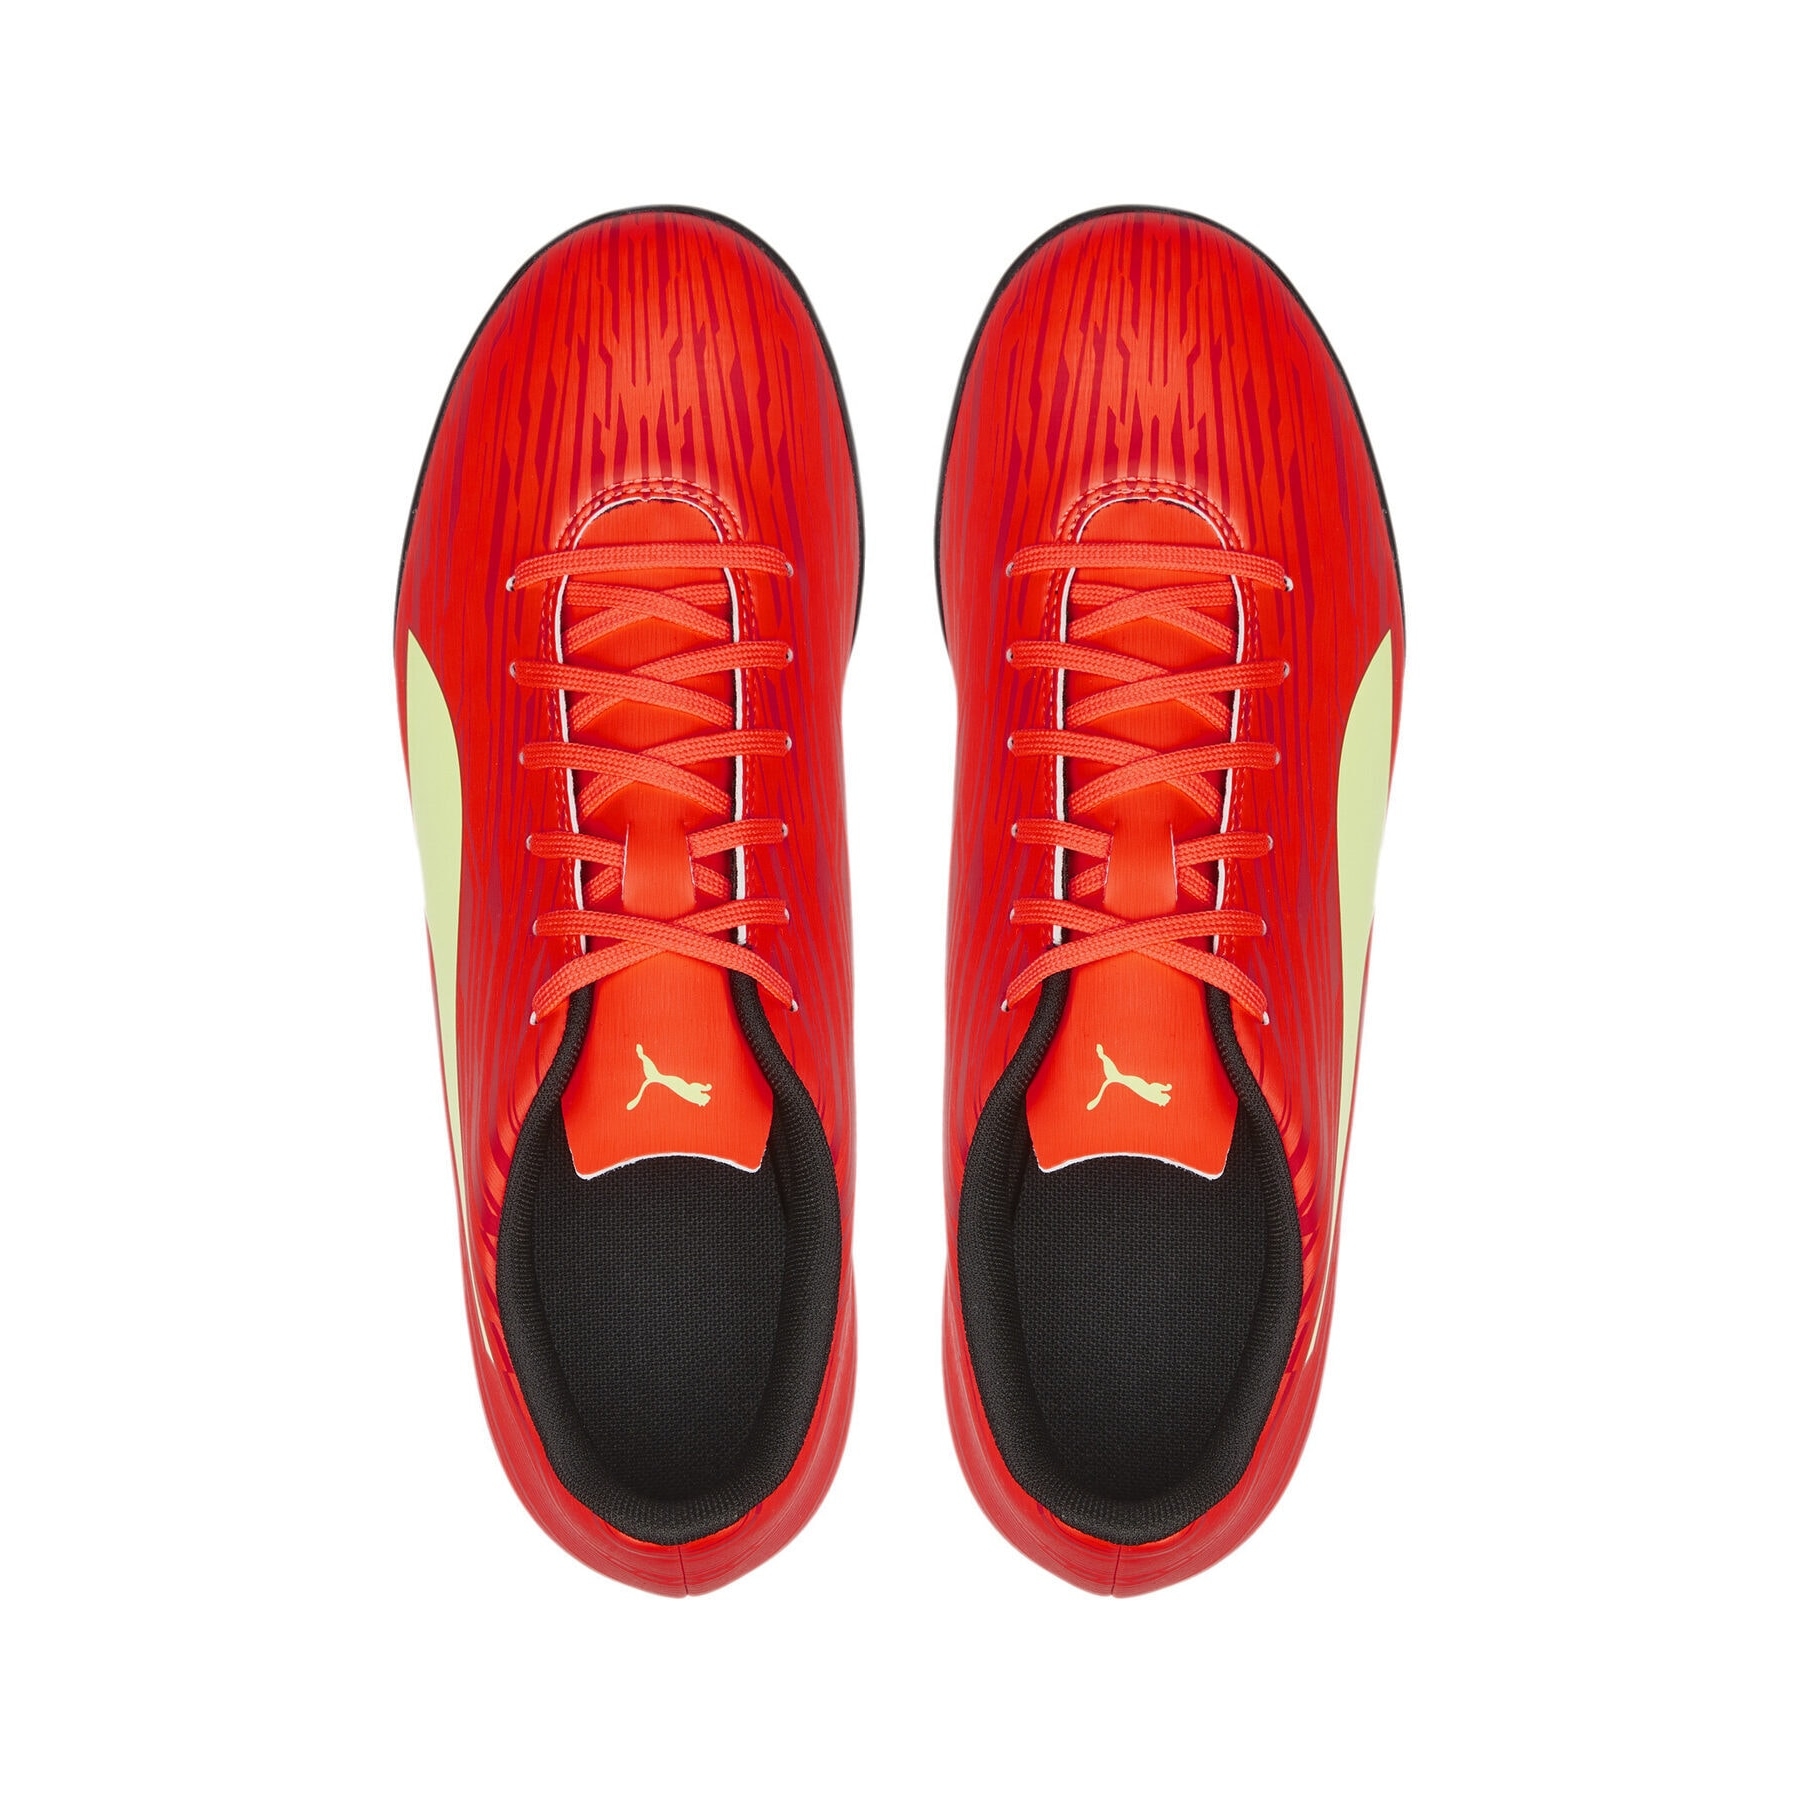 Puma Rapido III Erkek Kırmızı Halı Saha Ayakkabısı (106574-07)